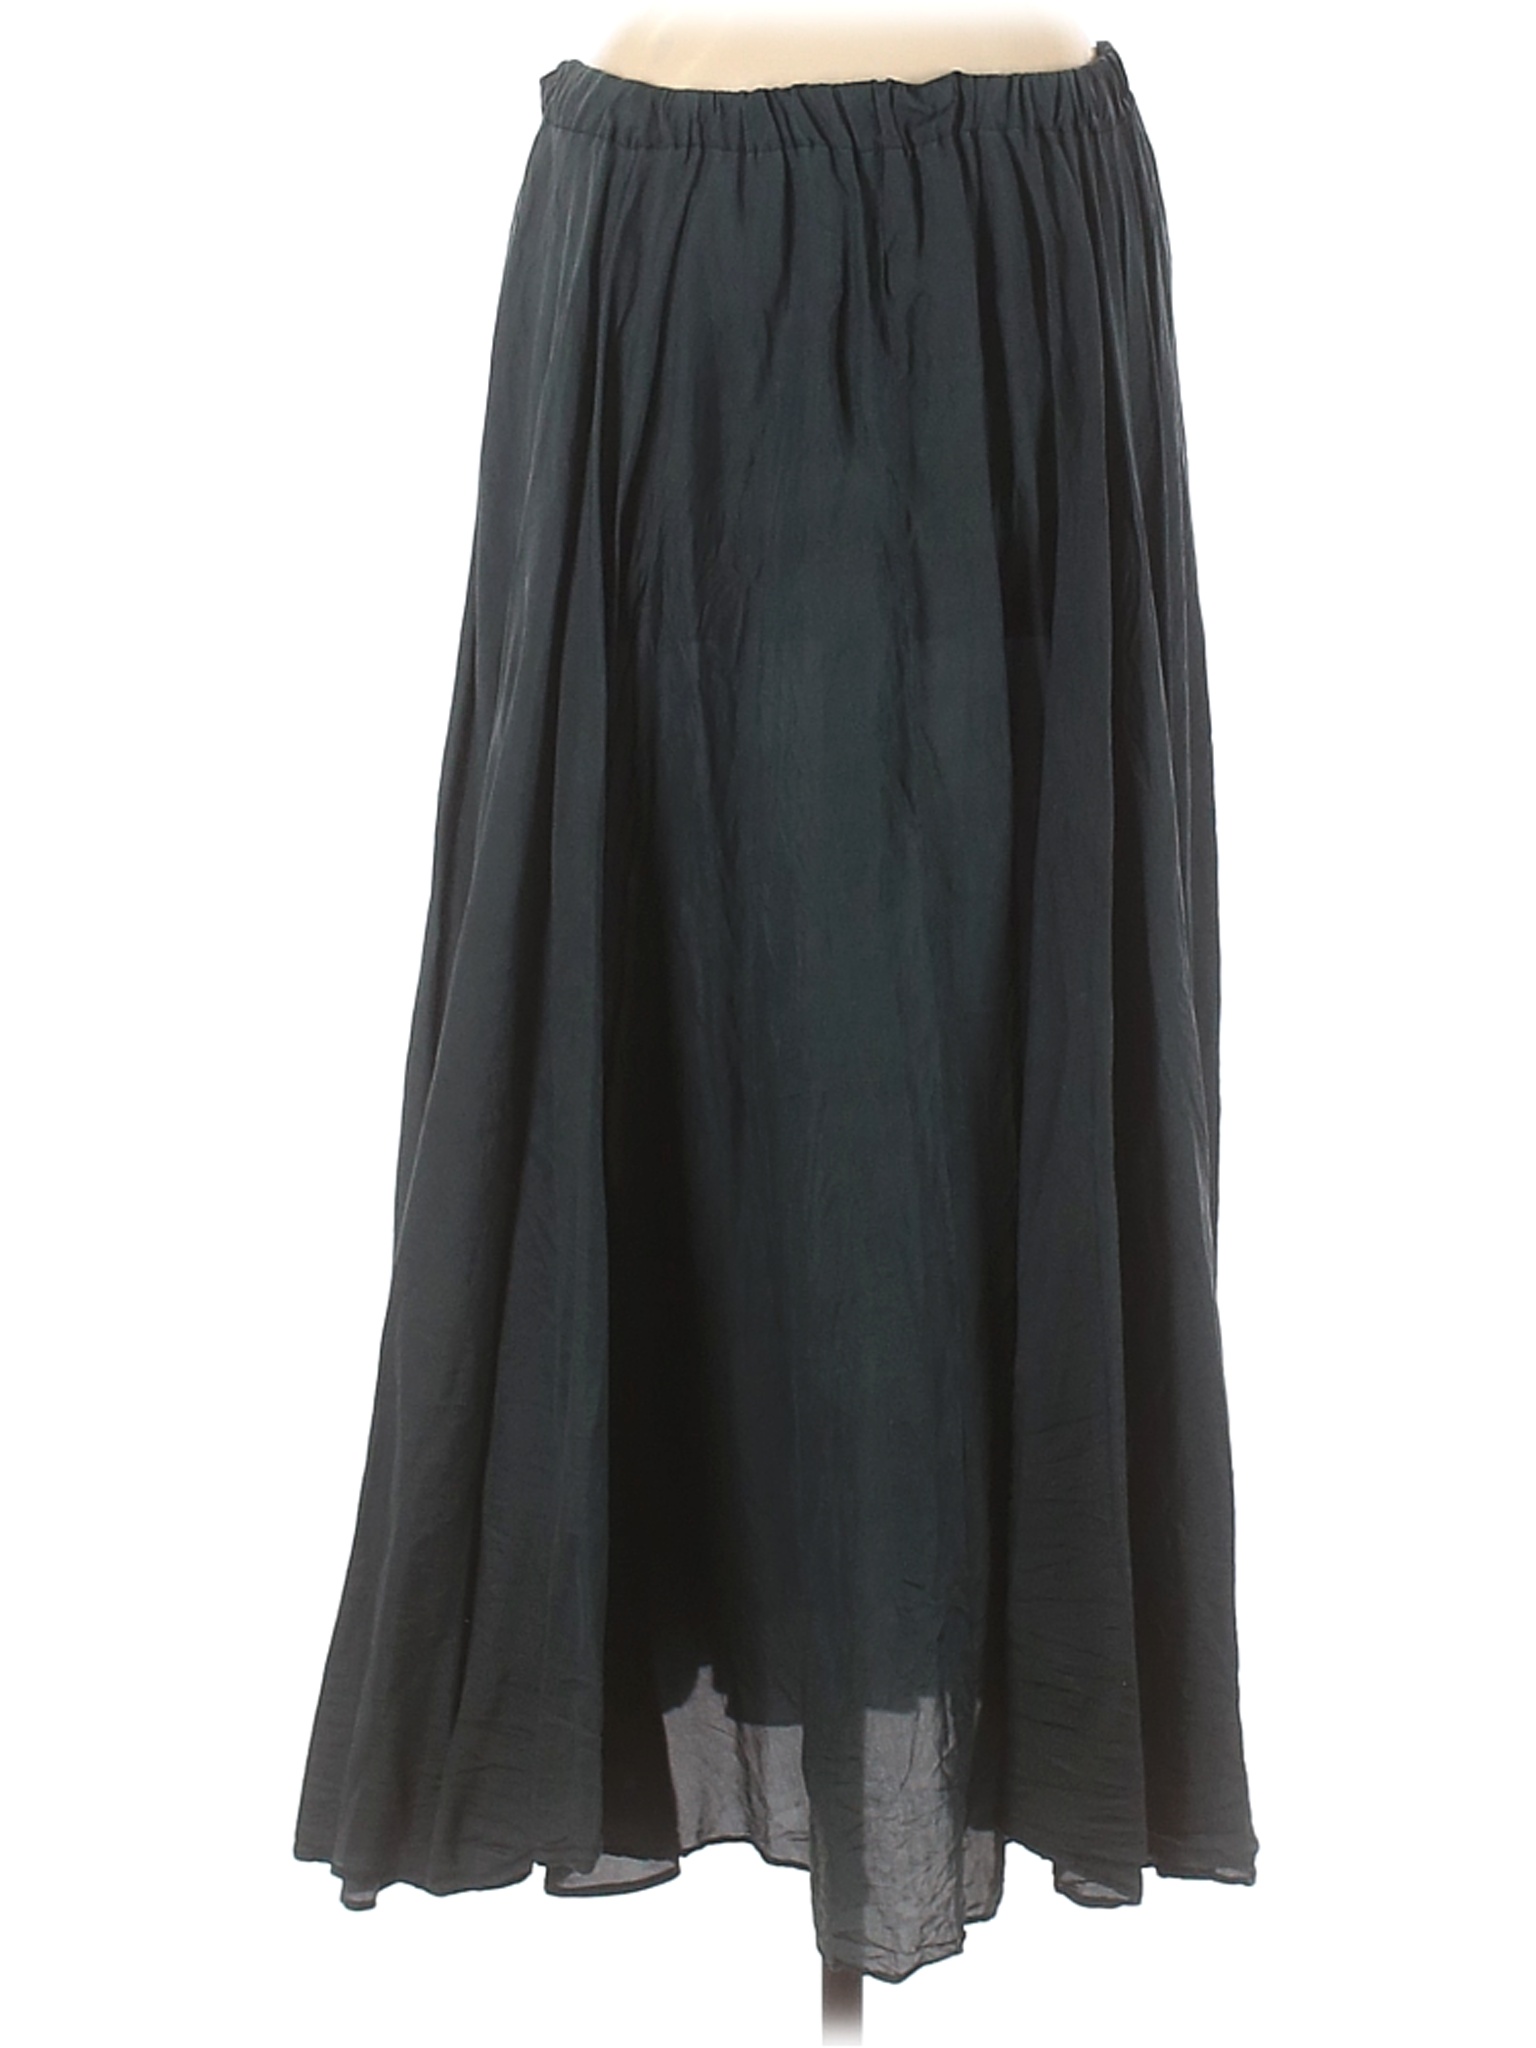 Whistles Women Gray Silk Skirt M | eBay